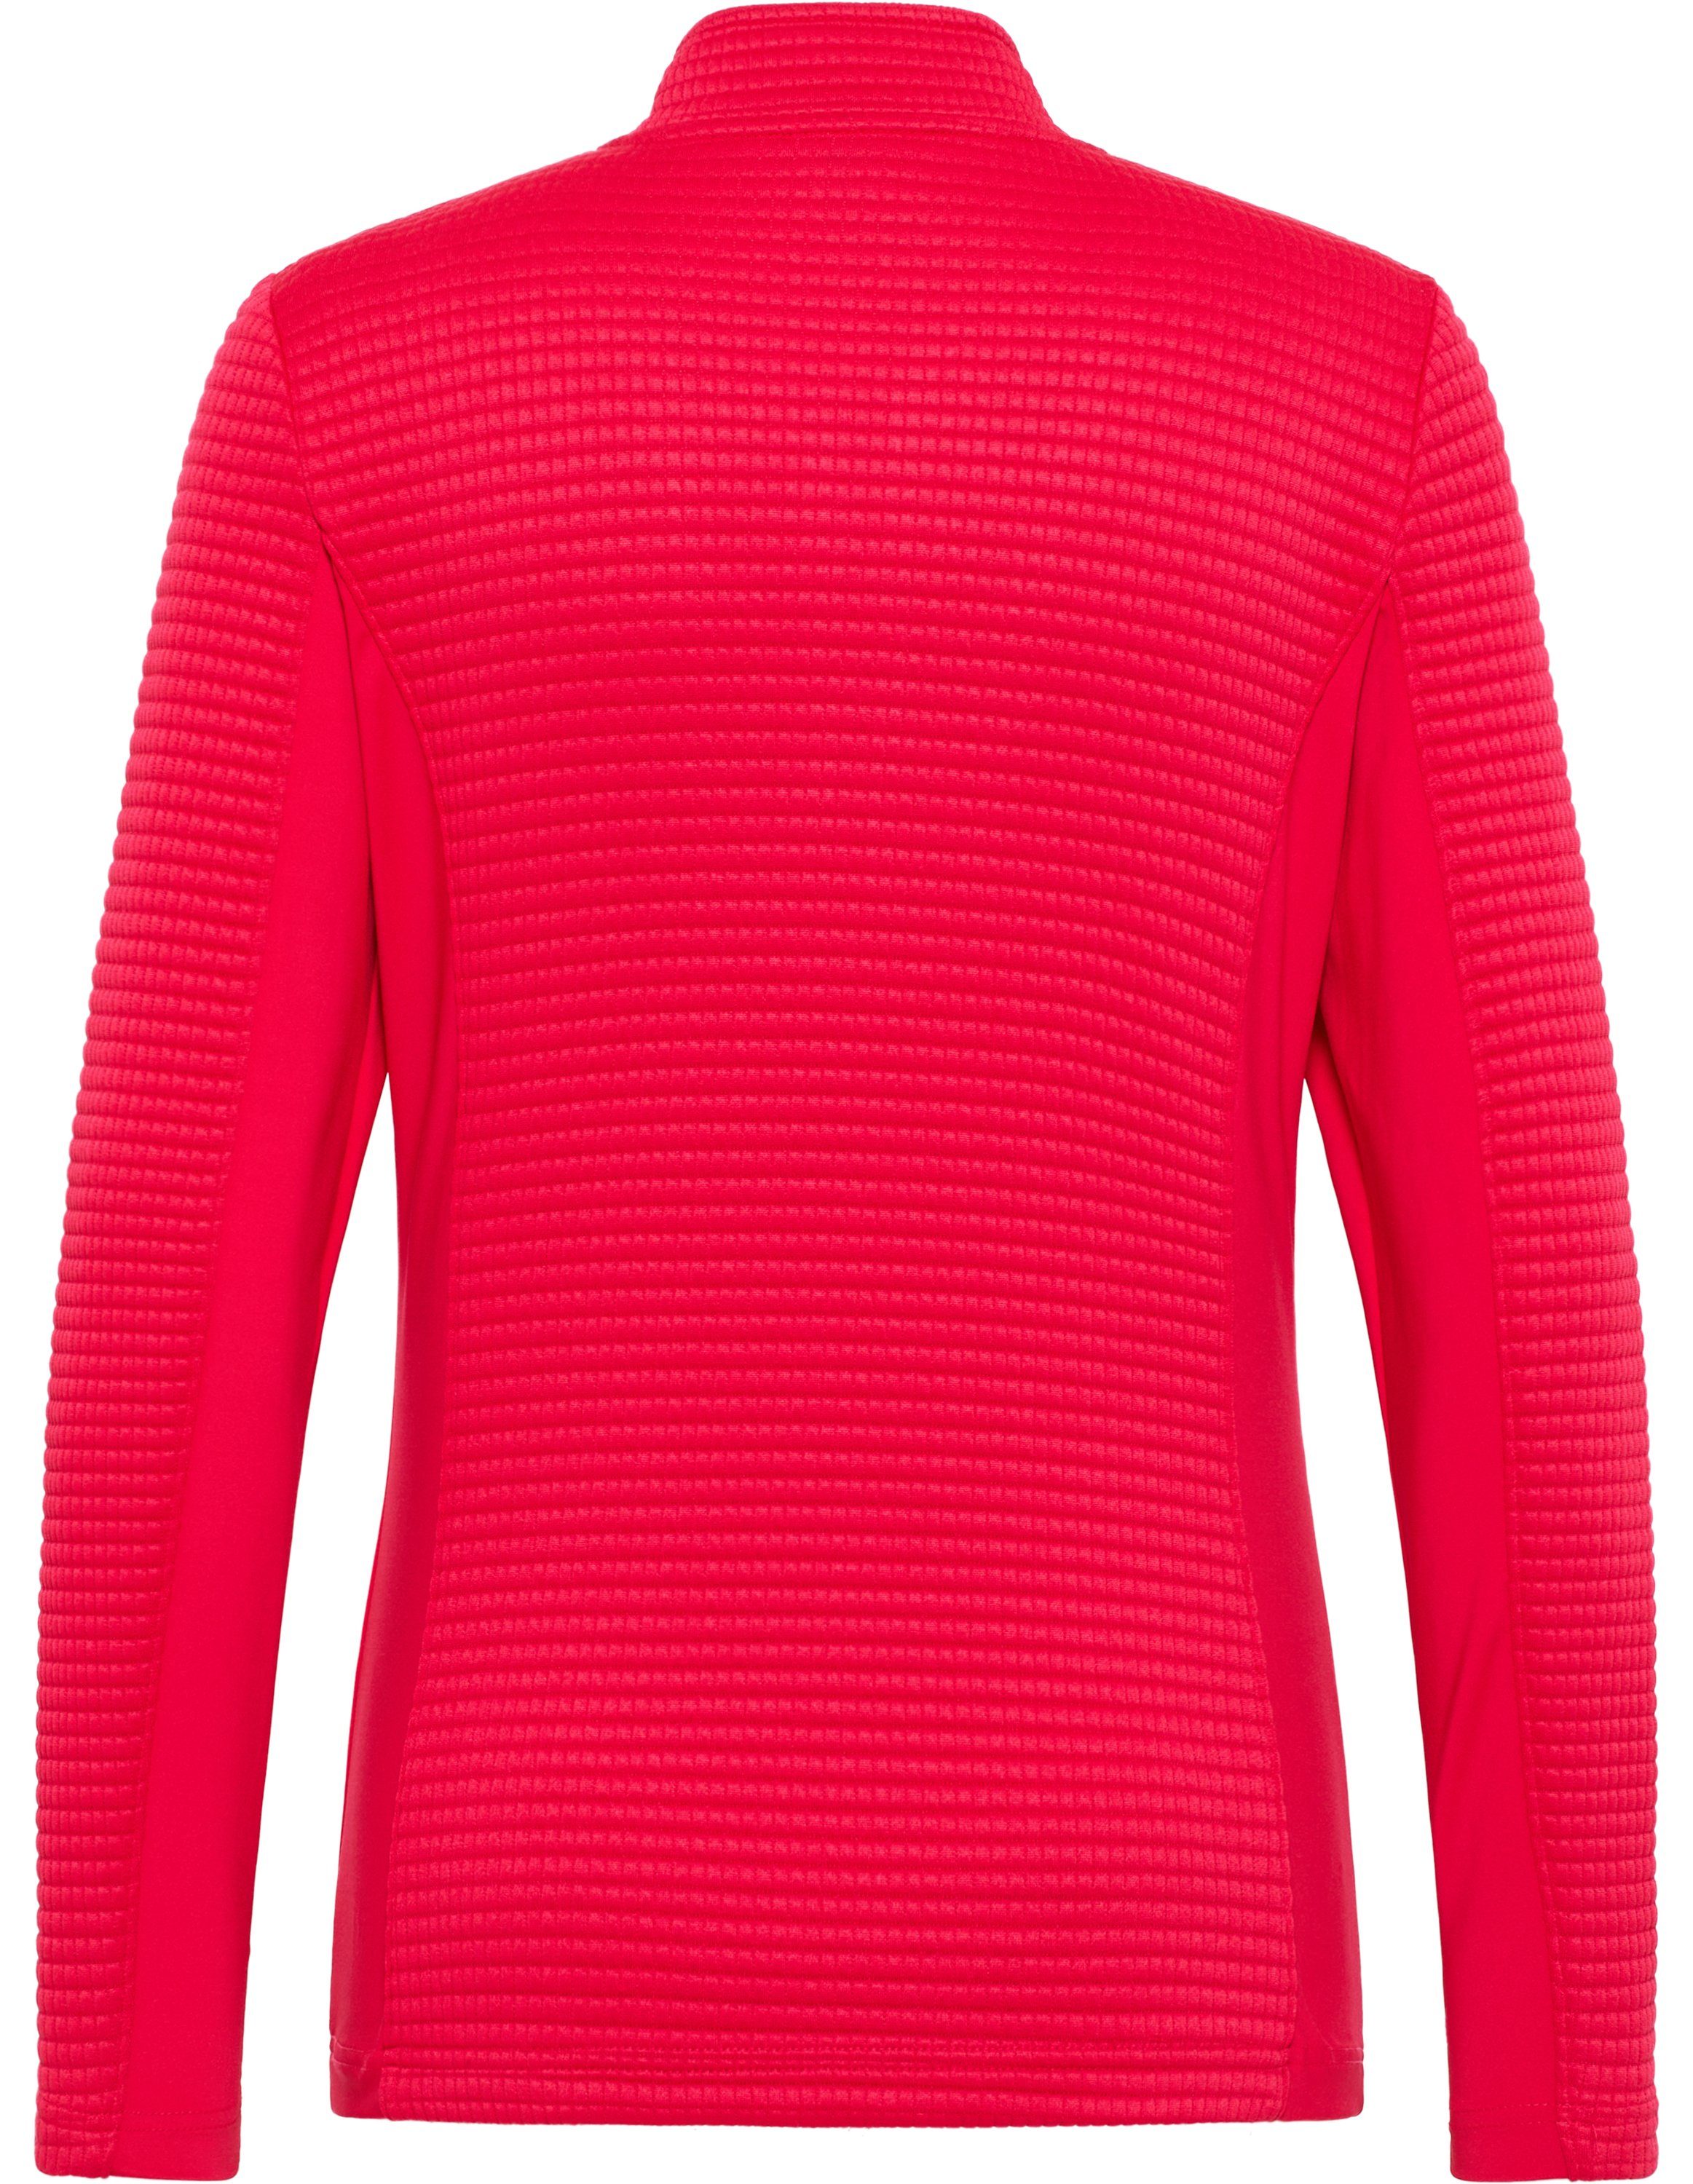 red Joy Sportswear Jacke Trainingsjacke SANJA virtual